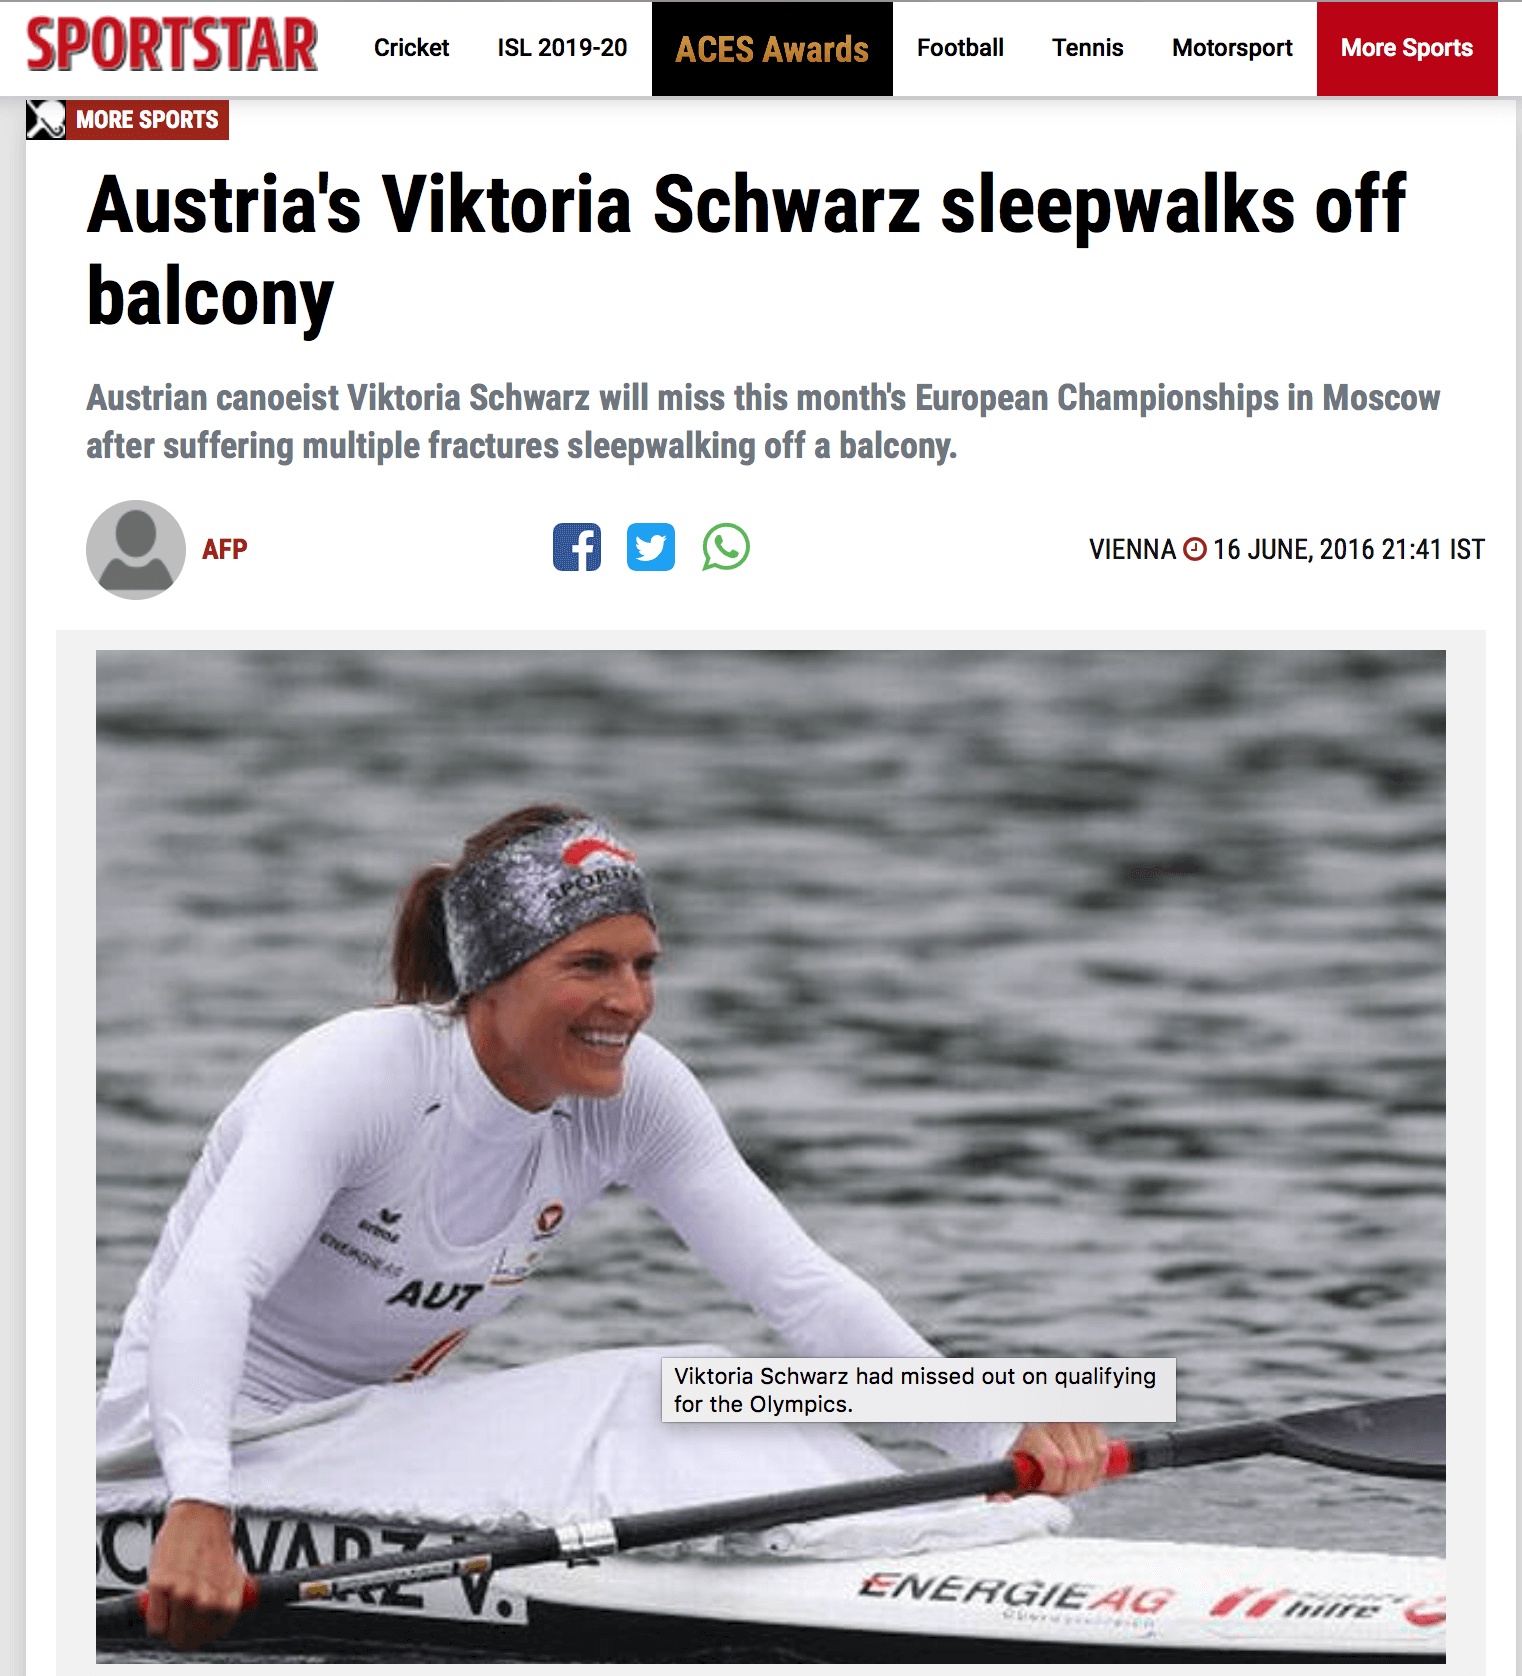 Austria's Viktoria Schwarz sleepwalks off balcony